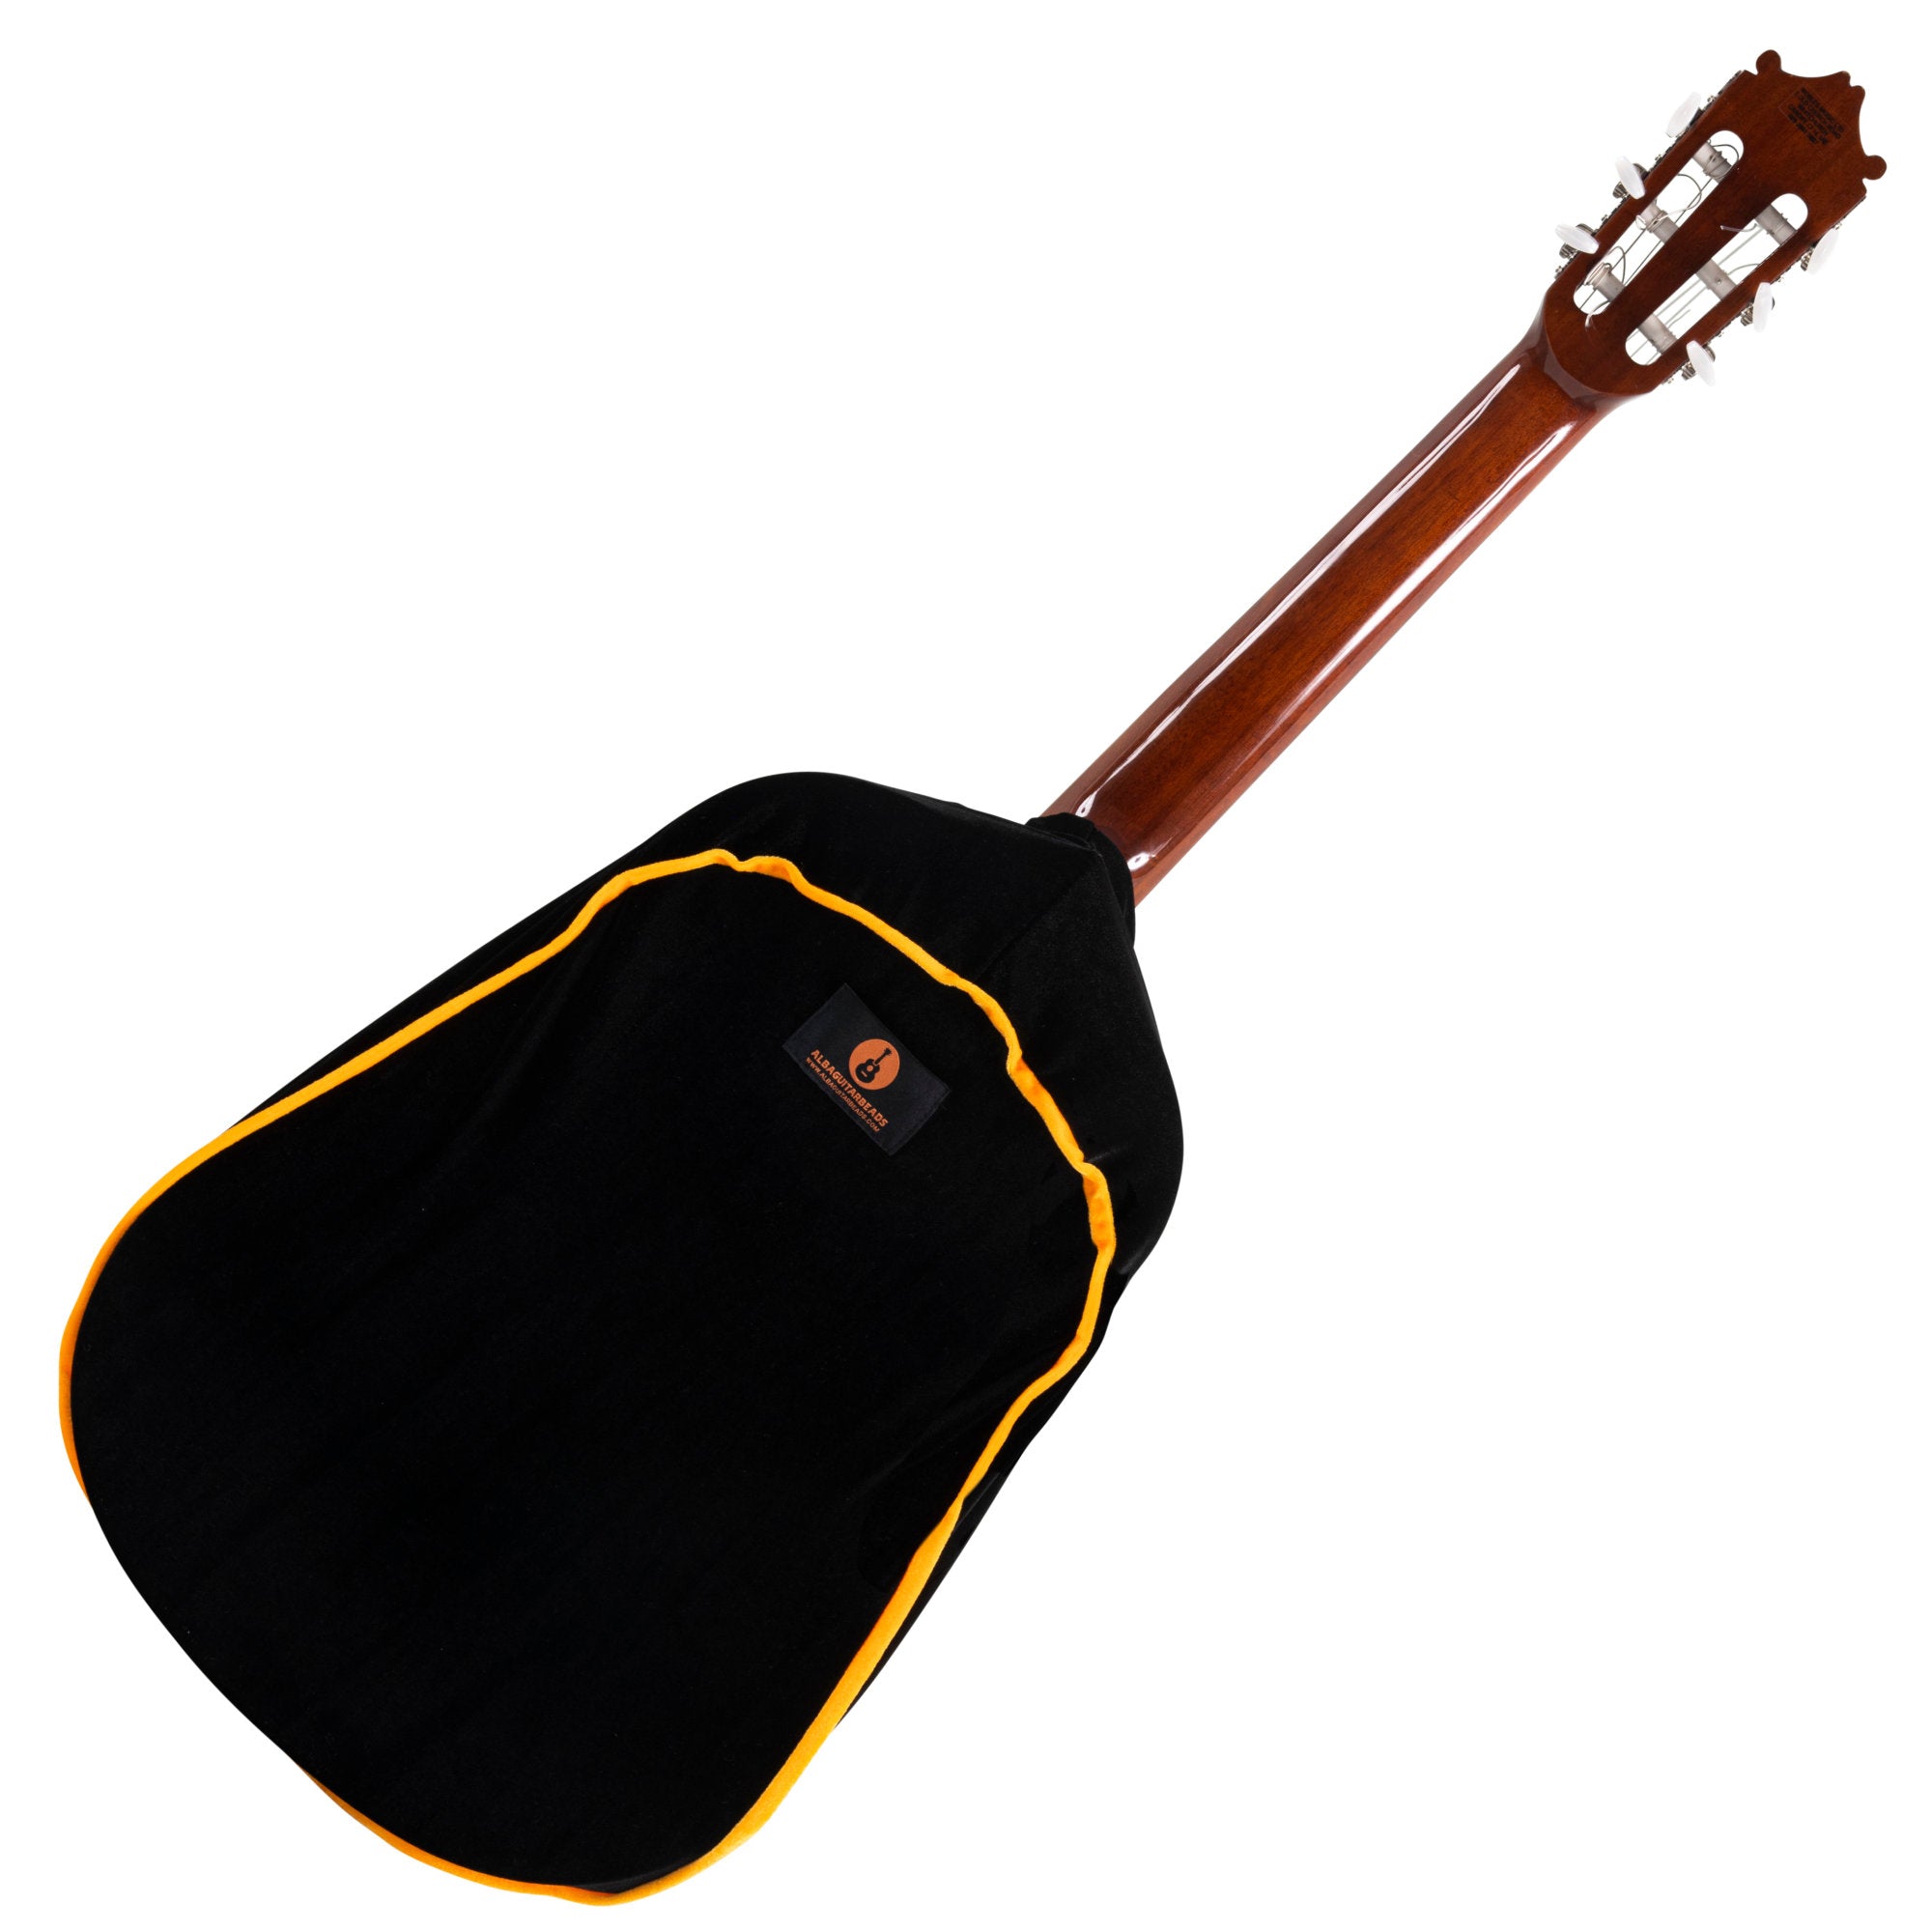 Alba Guitar Dust Cover - Housse de protection pour guitares classiques, acoustiques et électriques